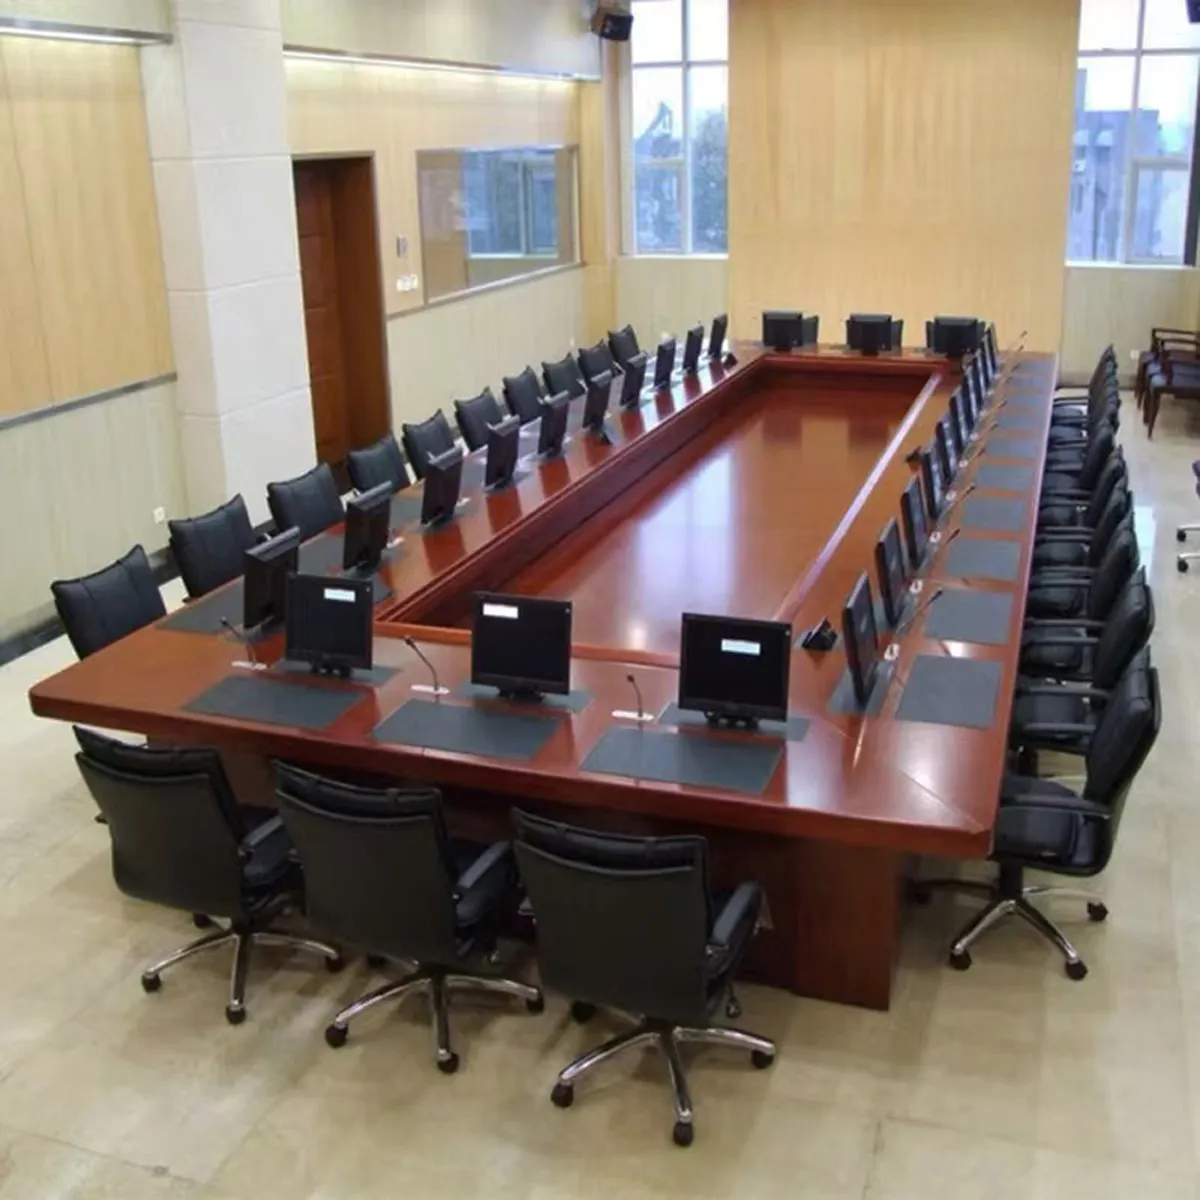 Высококачественный современный деревянный стол для конференций и собраний на 20 персон большого размера для правительства